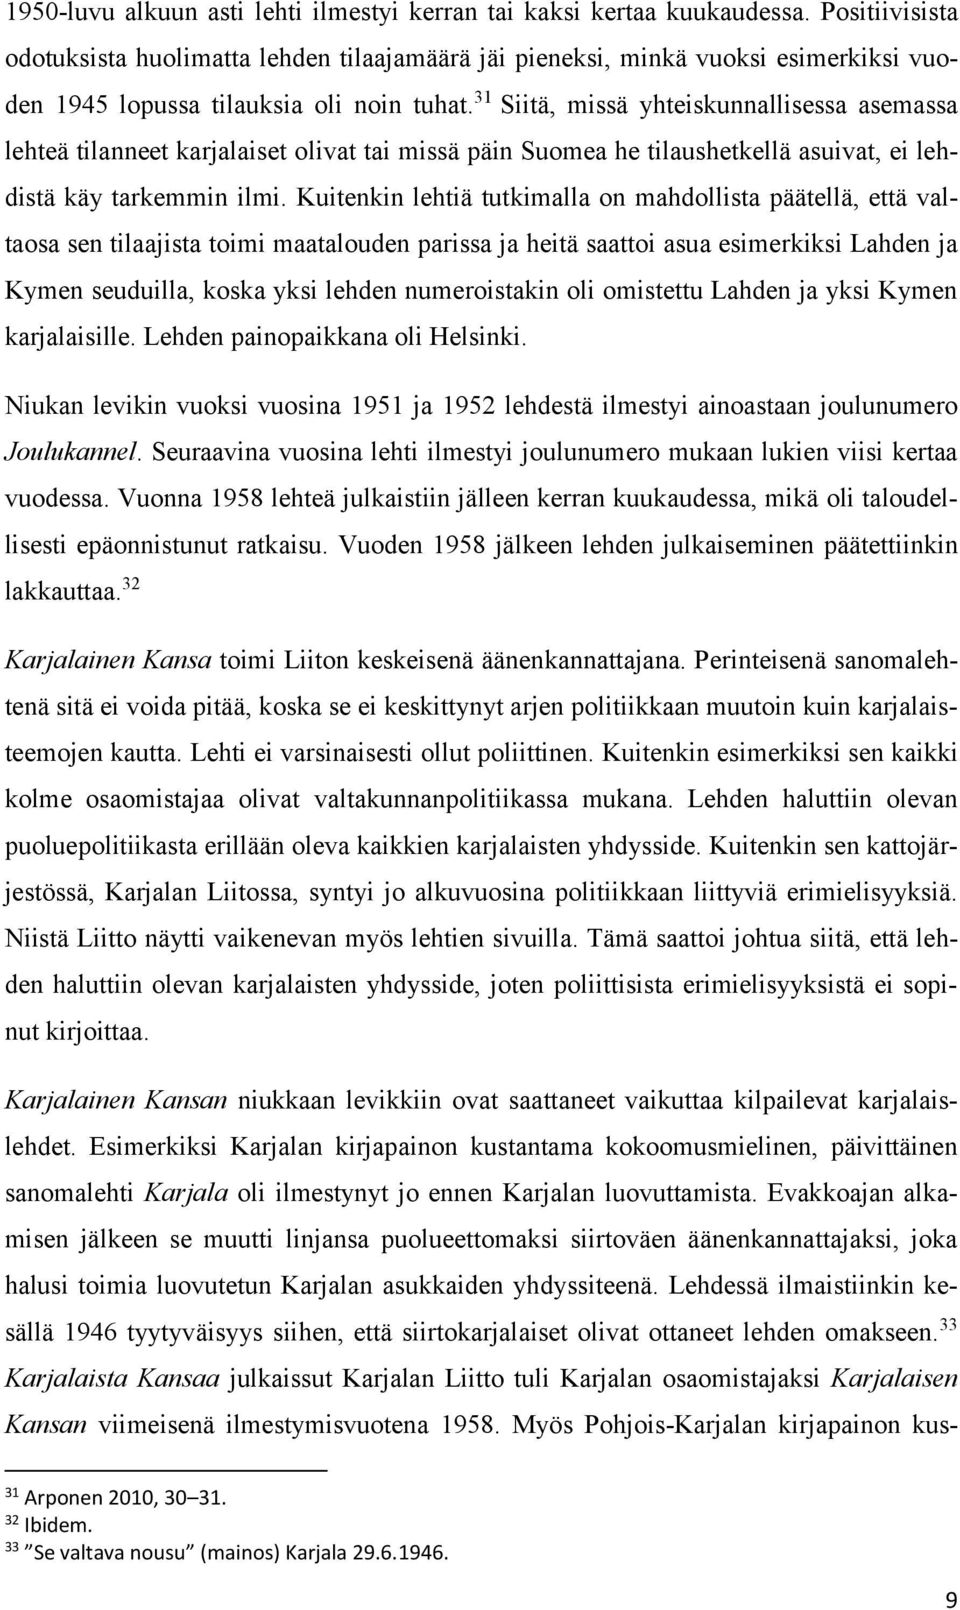 31 Siitä, missä yhteiskunnallisessa asemassa lehteä tilanneet karjalaiset olivat tai missä päin Suomea he tilaushetkellä asuivat, ei lehdistä käy tarkemmin ilmi.